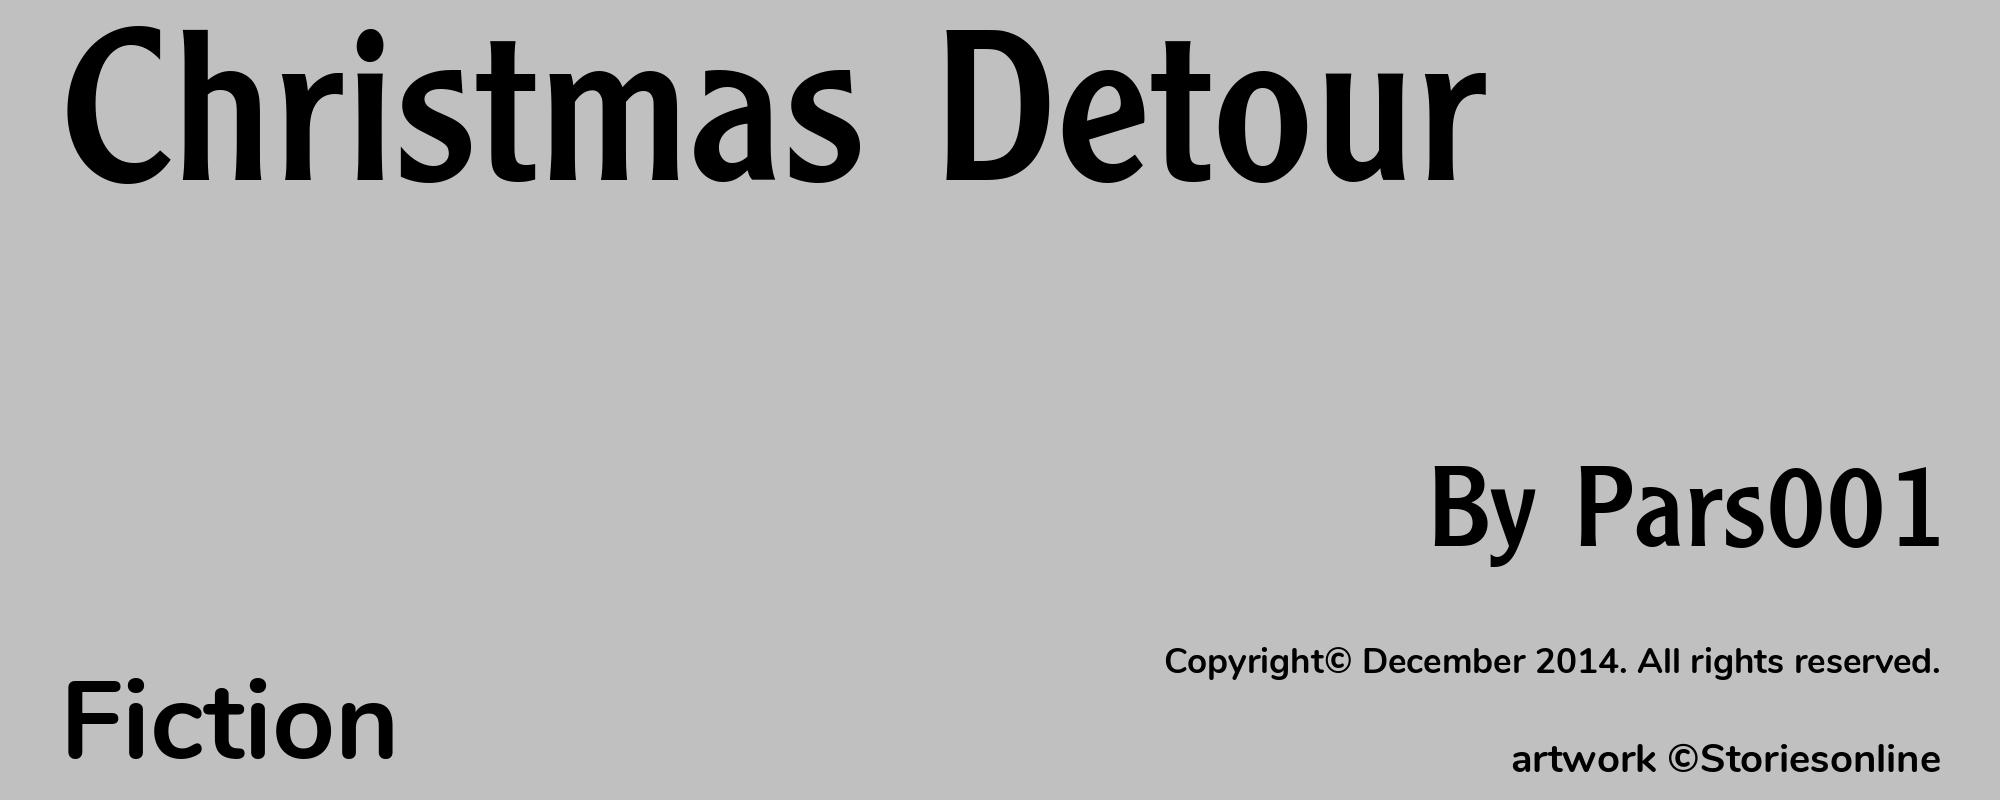 Christmas Detour - Cover